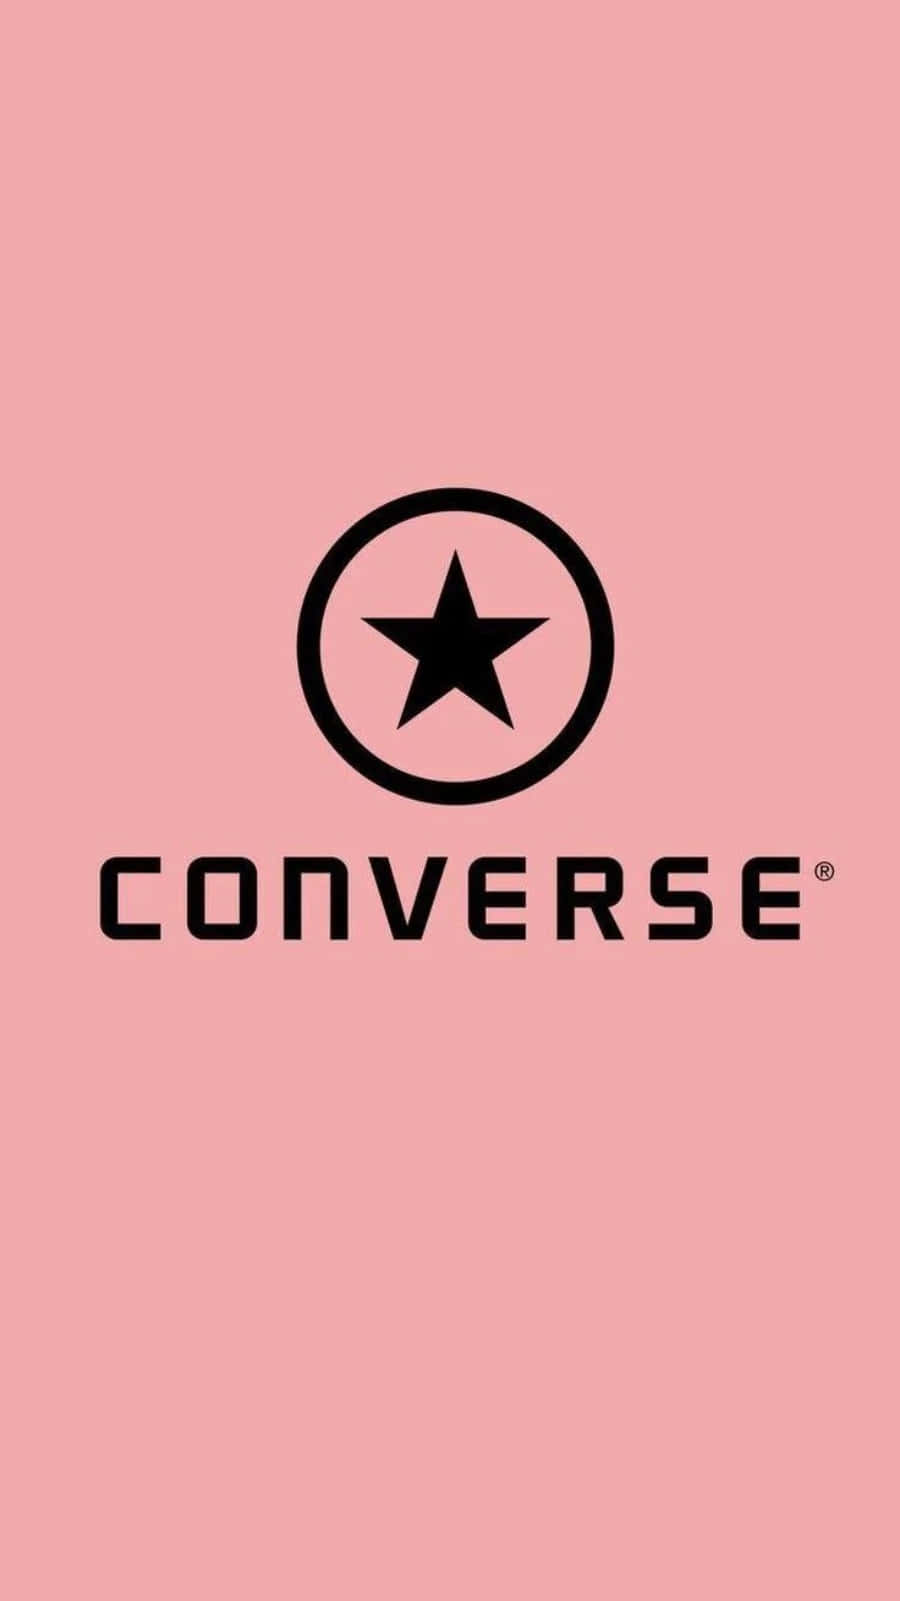 Diseñoclásico, Logotipo Icónico: La Marca Converse